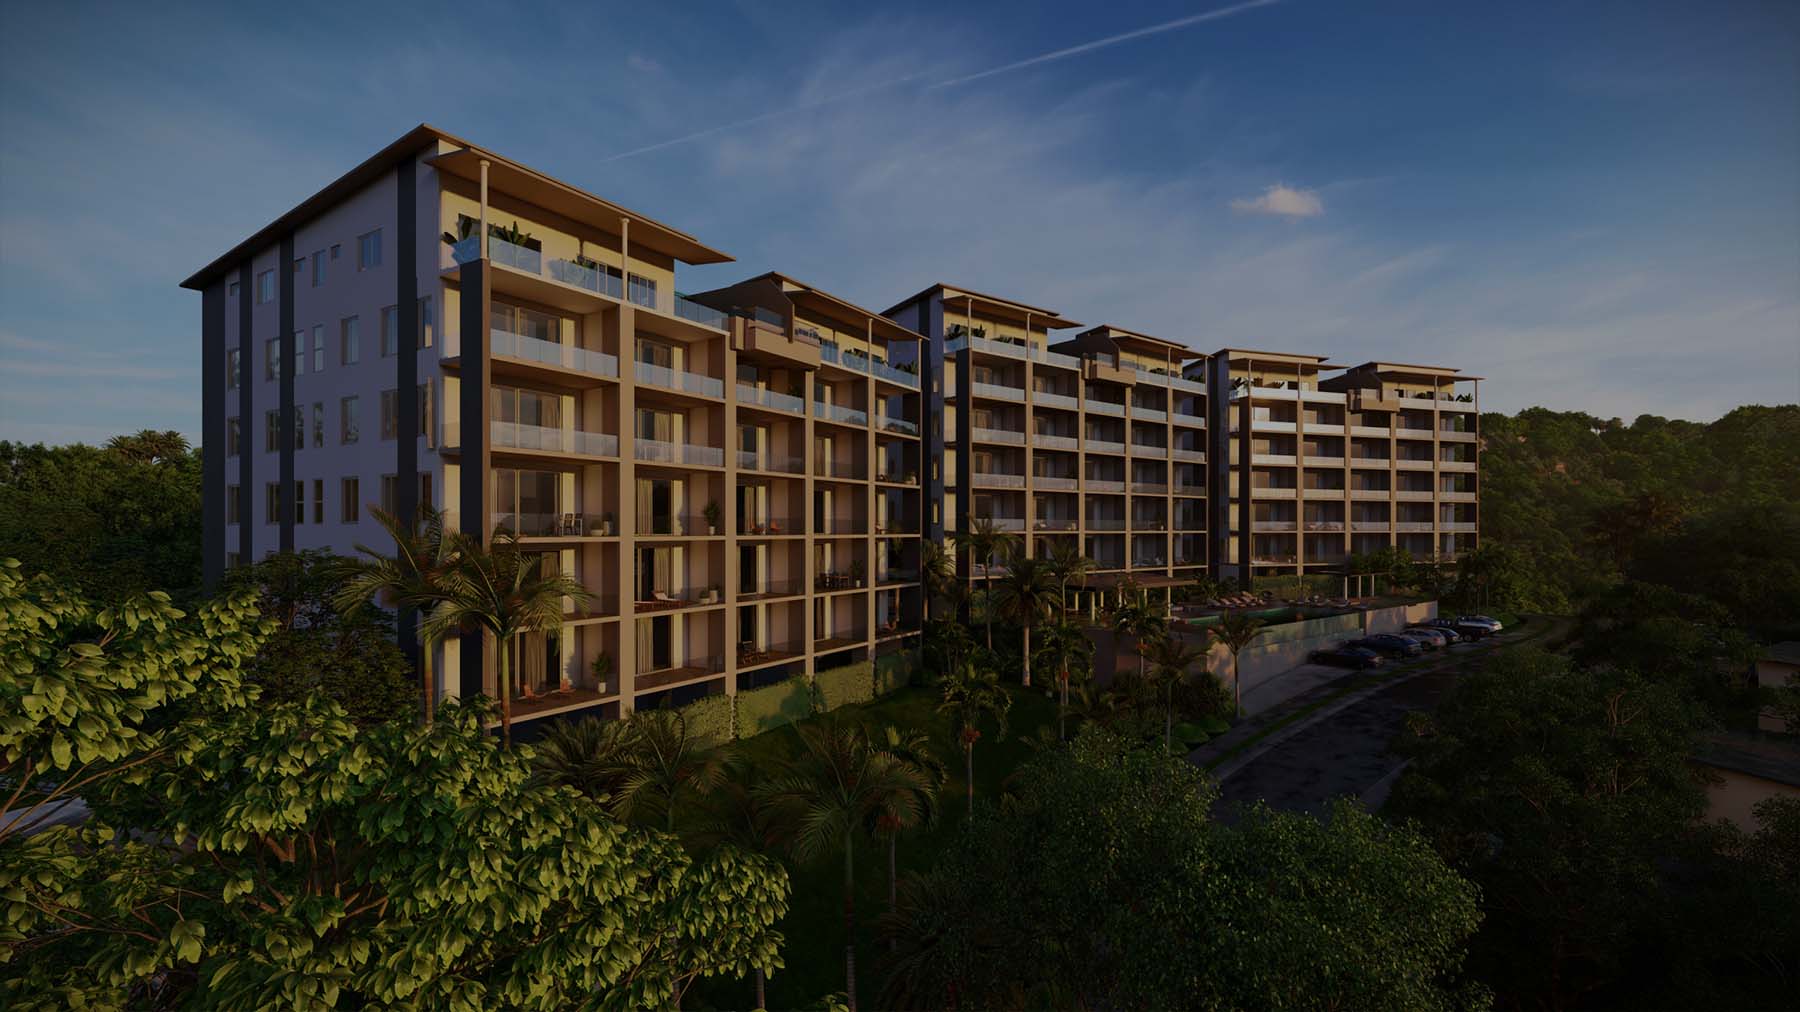 Vista Azul Costa Rica - Condominium Rendering - Exterior